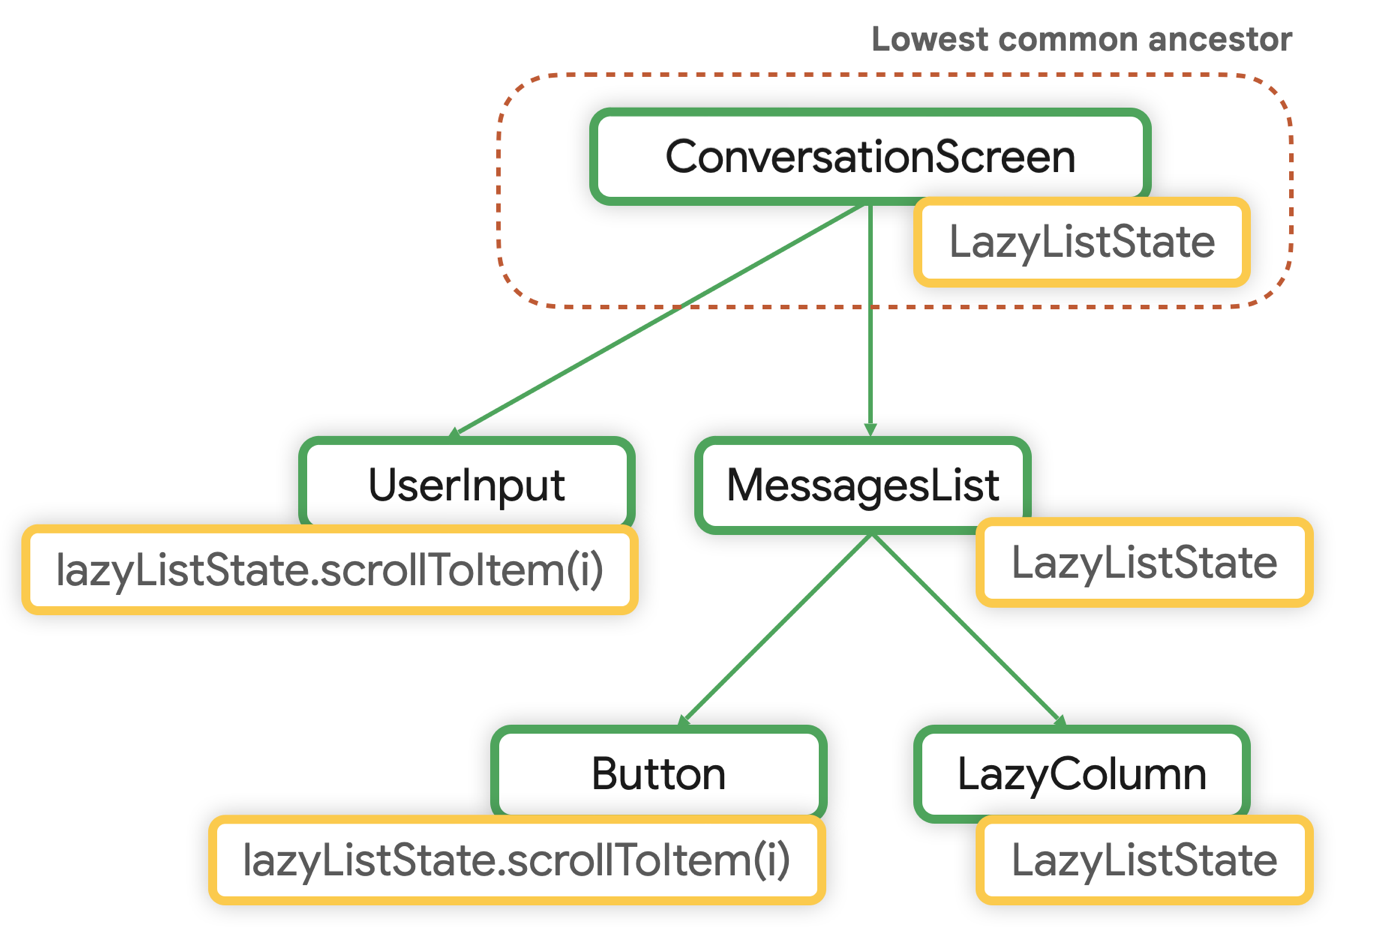 Ancestor umum terendah untuk LazyListState adalah ConversationScreen